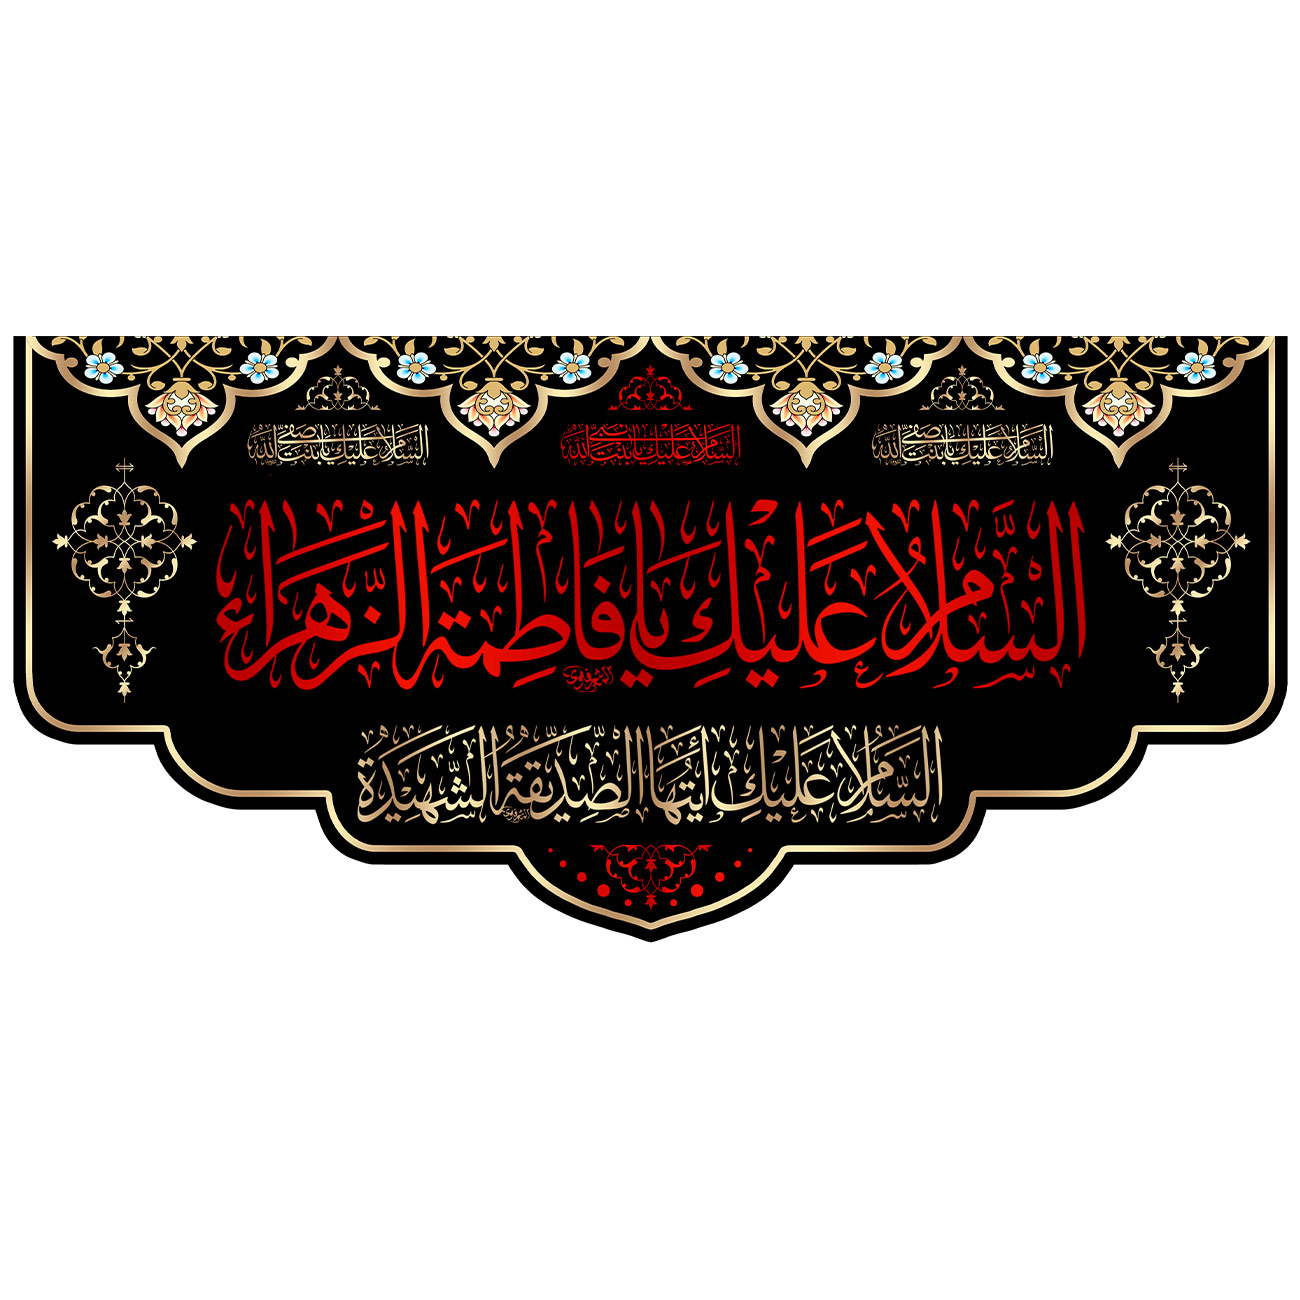  پرچم مدل شهادت طرح السلام علیک یا فاطمه الزهرا کد 01H